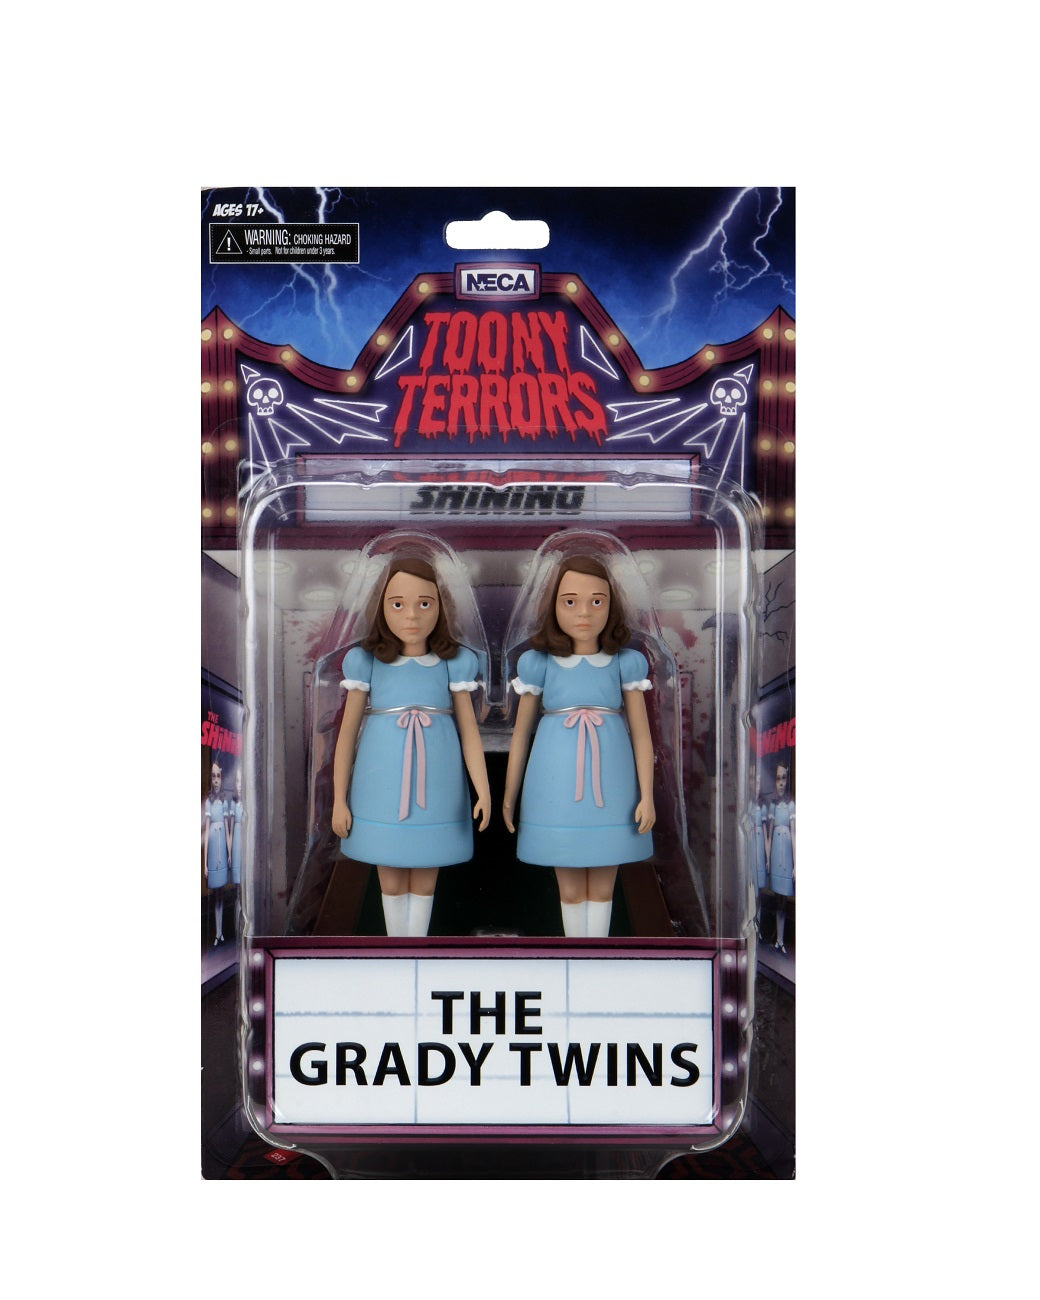 The Grady Twins Toony Terrors - The Shining NECA